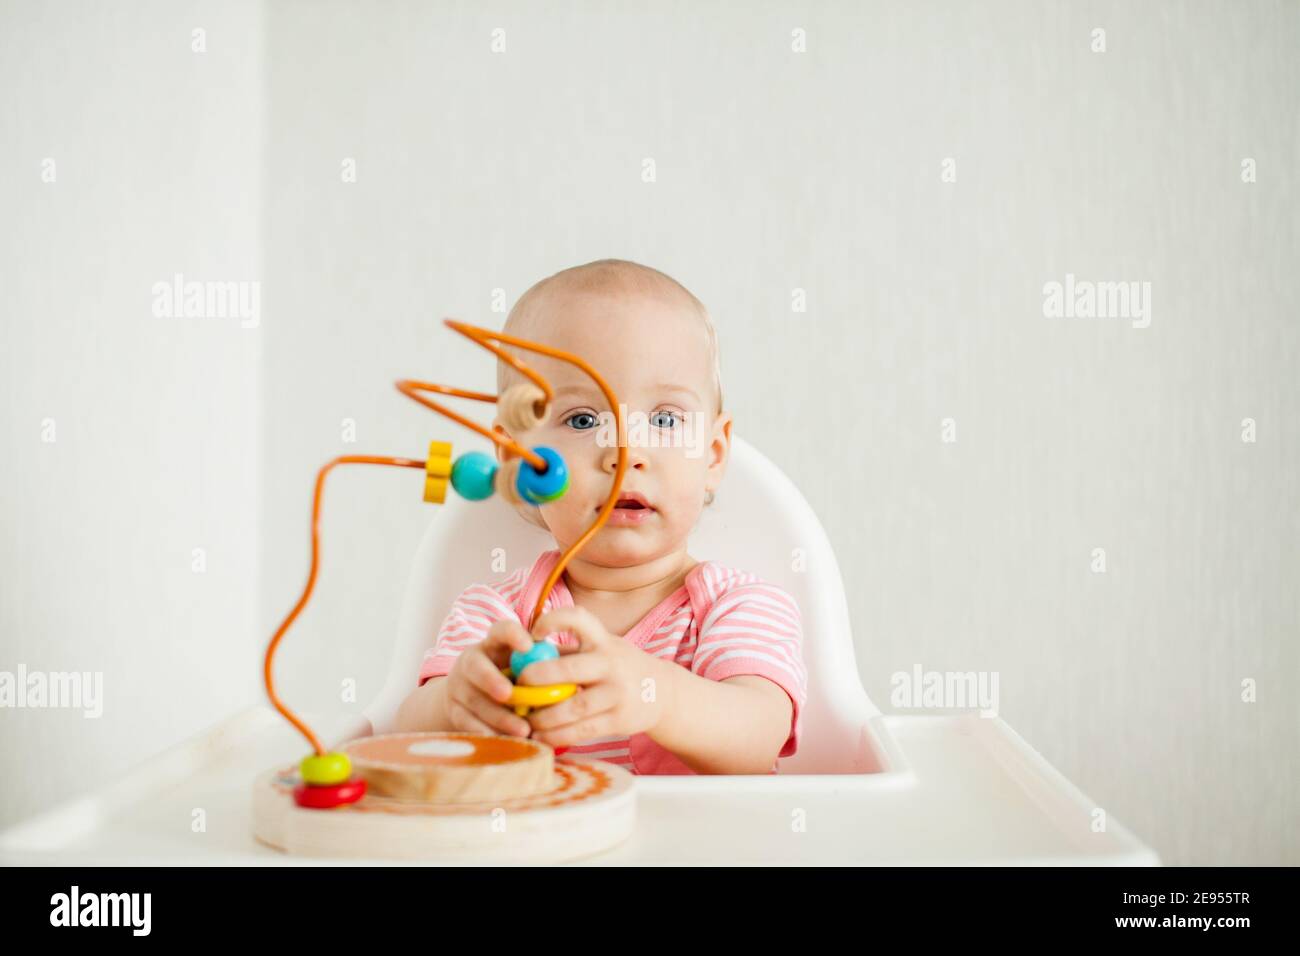 la niña juega con un juguete de laberinto educativo. Desarrollo de habilidades motoras finas y pensamiento lógico Foto de stock